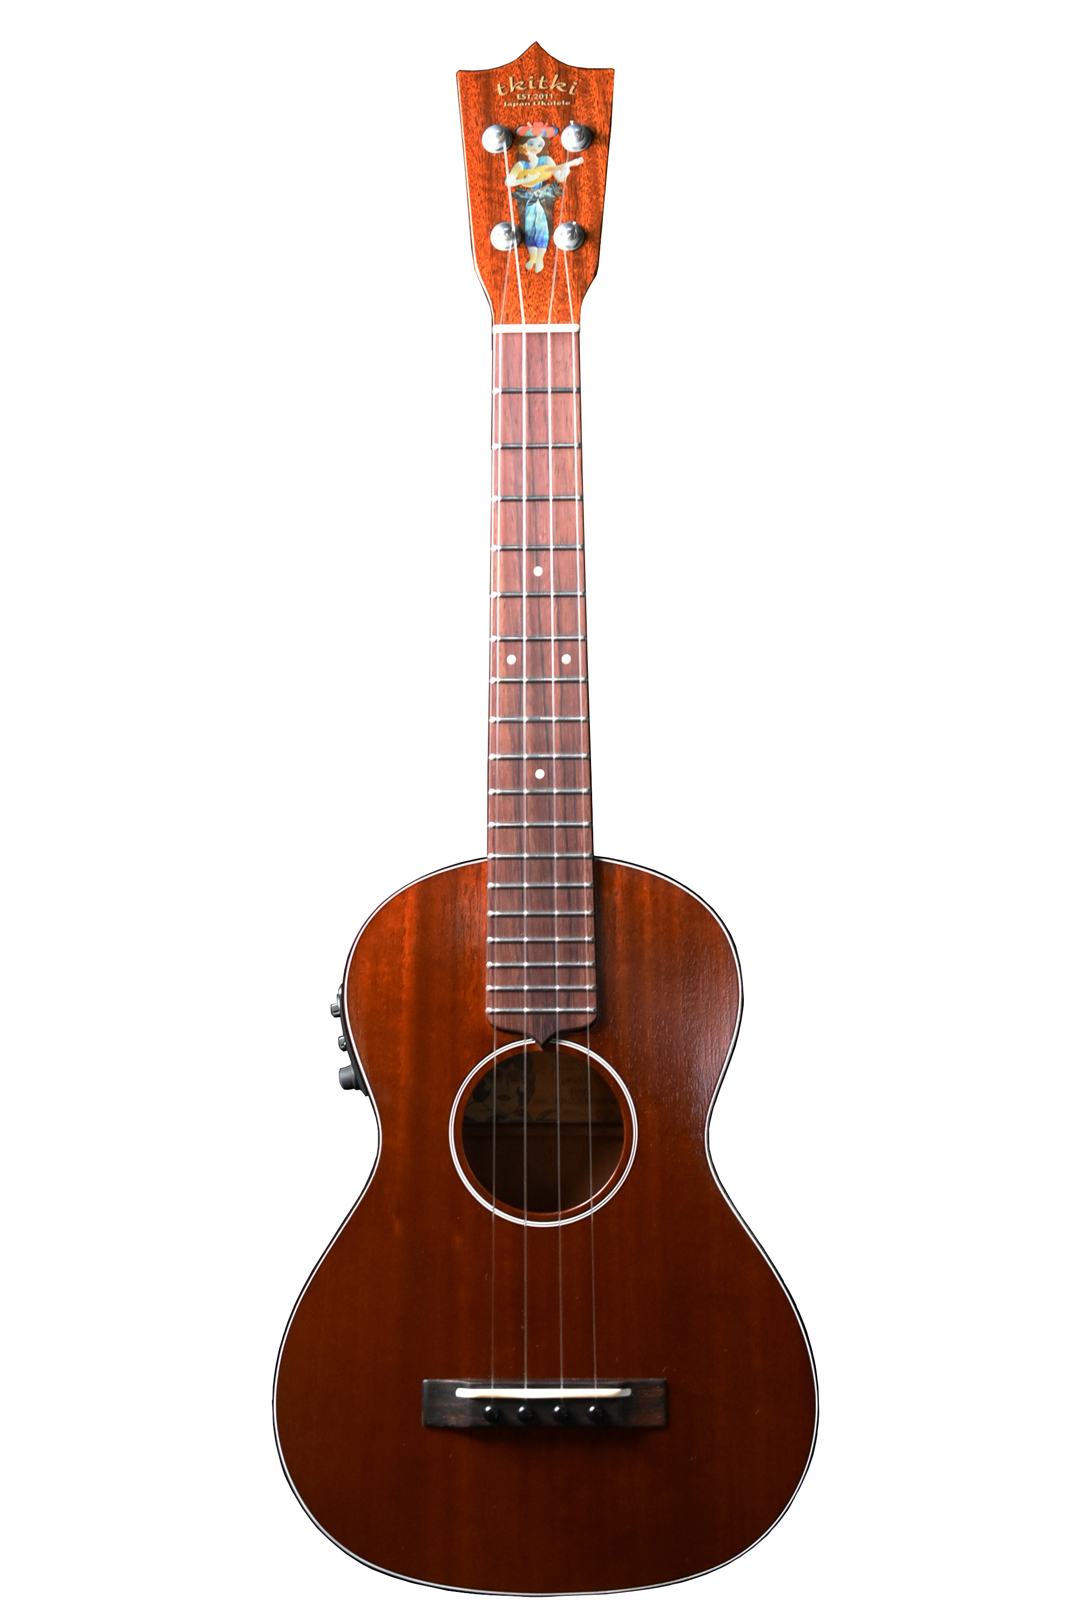 tkitki ukulele HM-T-E･KIYOSAKU HulaGirlケース付属 ティキティキ・ウクレレ HM-T-E･KIYOSAKU HulaGirlケース付属